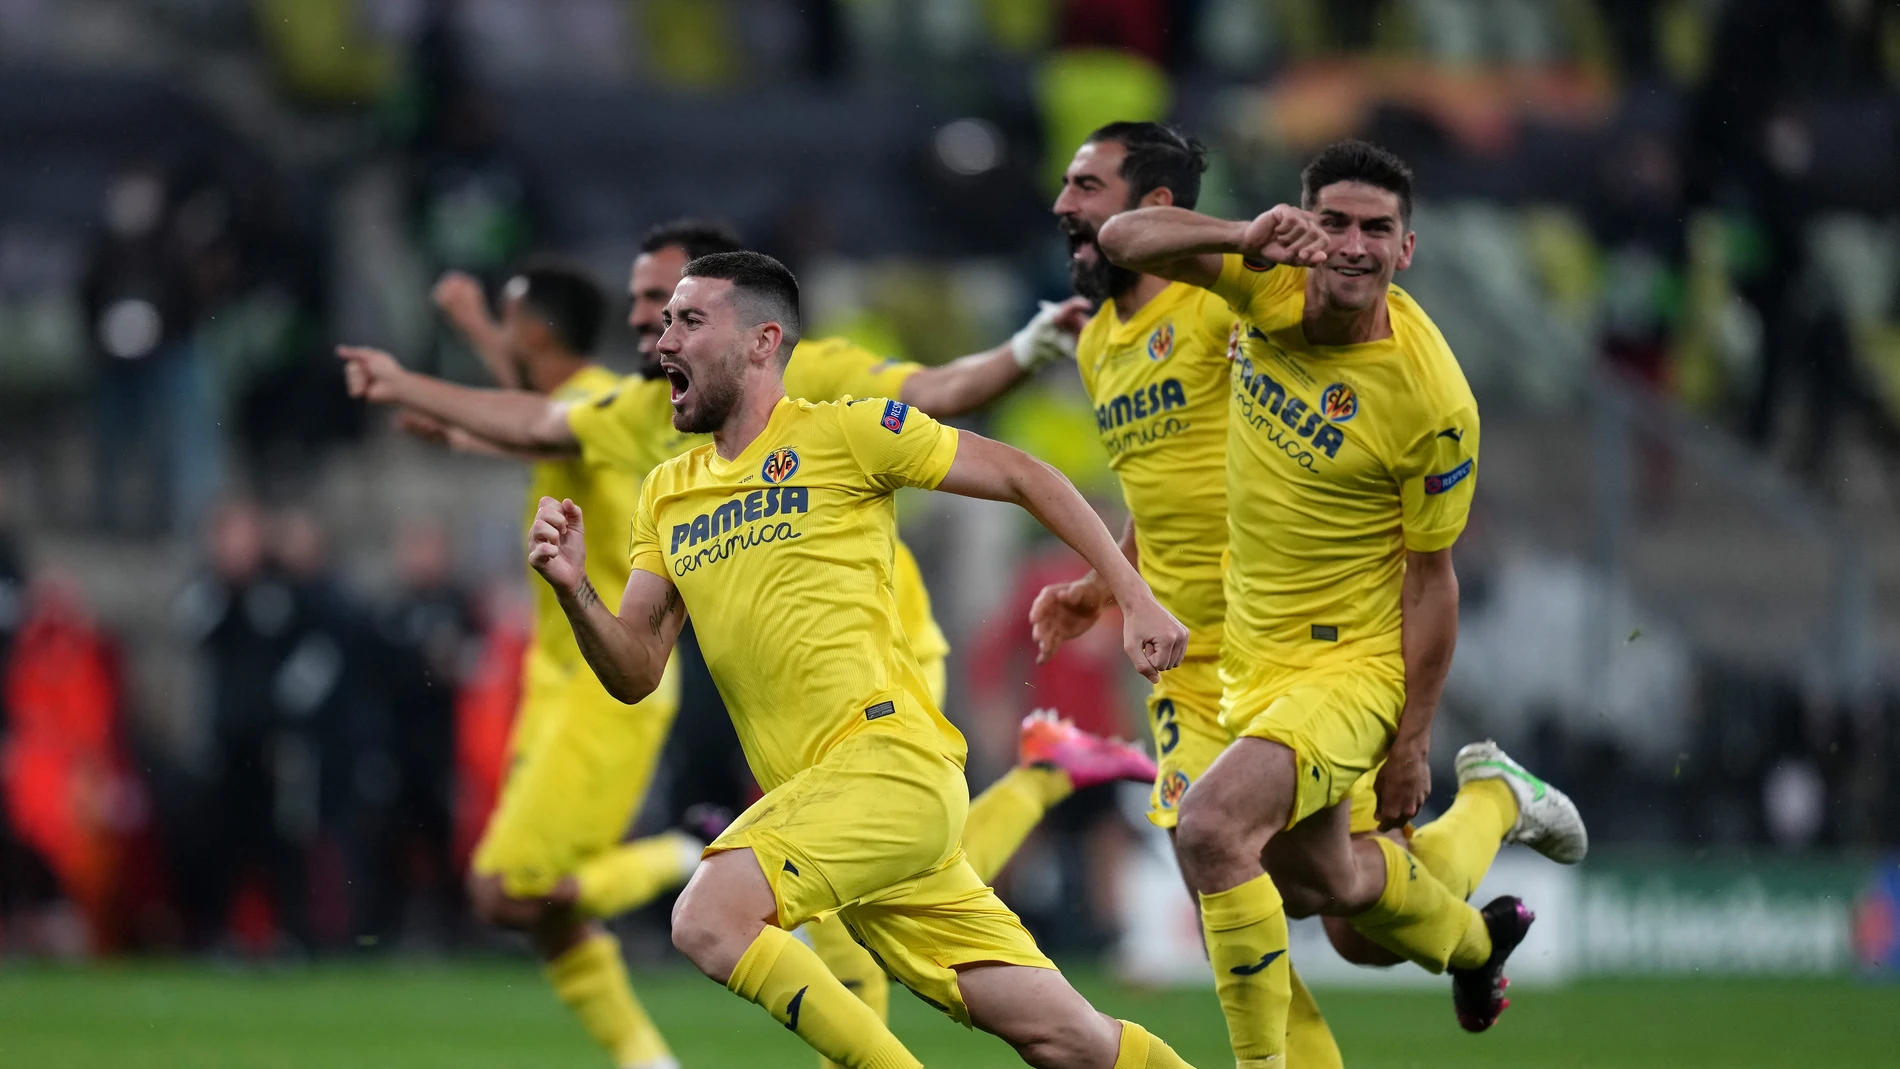 El Villarreal se proclama campeón de la Europa League tras ganar al Manchester en una épica tanda de penaltis